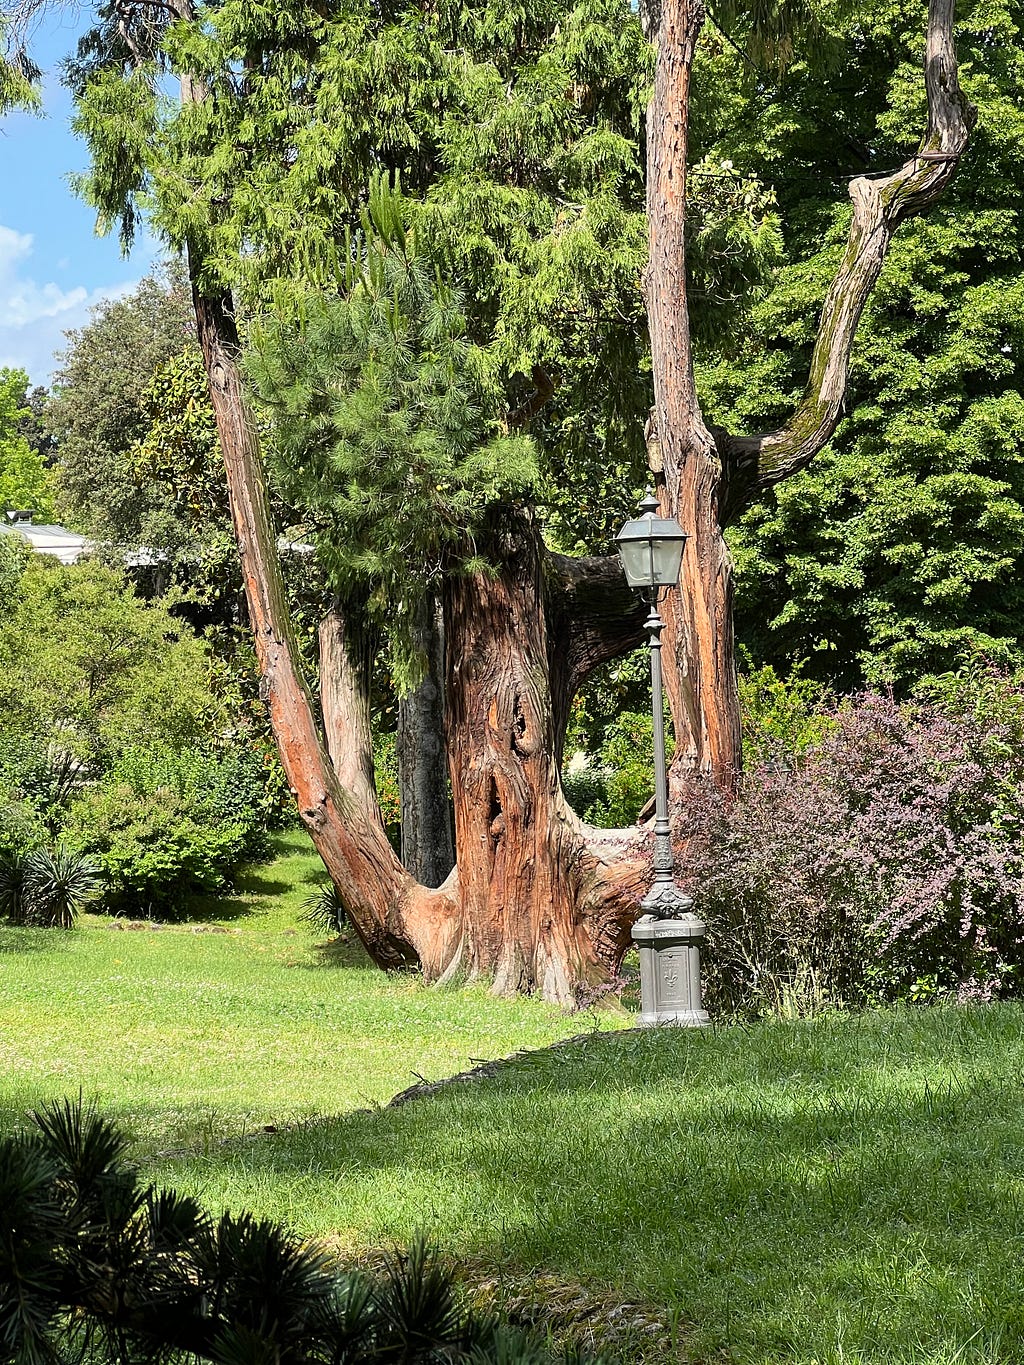 Photo of a large L’Albero dei Cornuti, California Insense-Cedar in the Giardino del Boblino